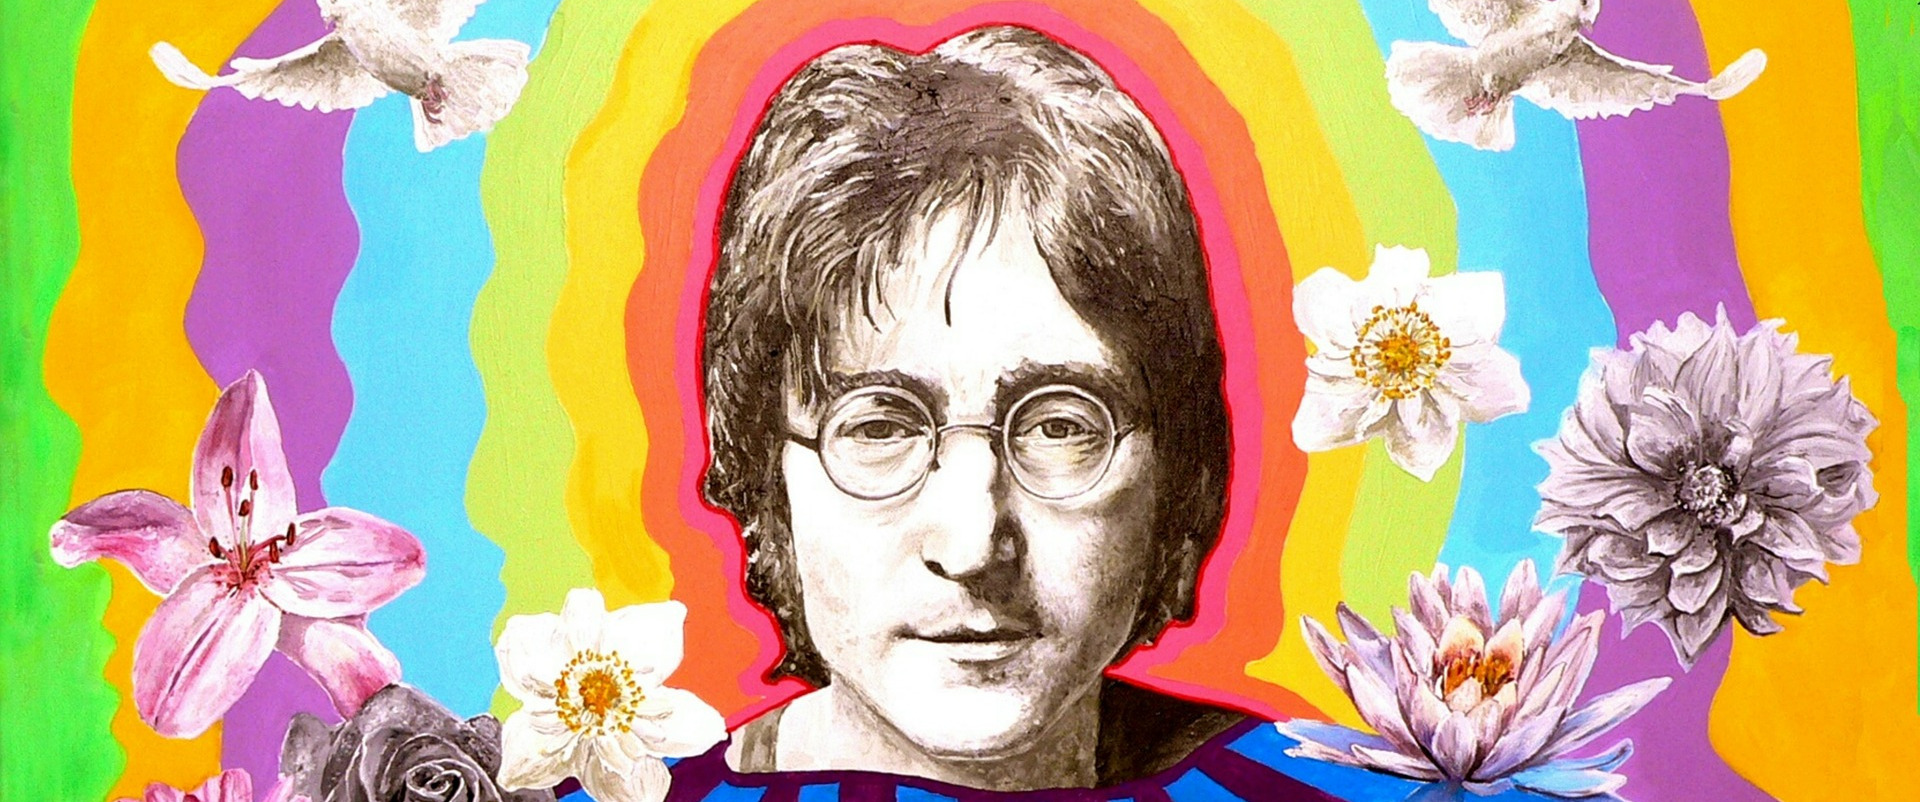 Imagine John Yoko - Making the Imagine album artwork